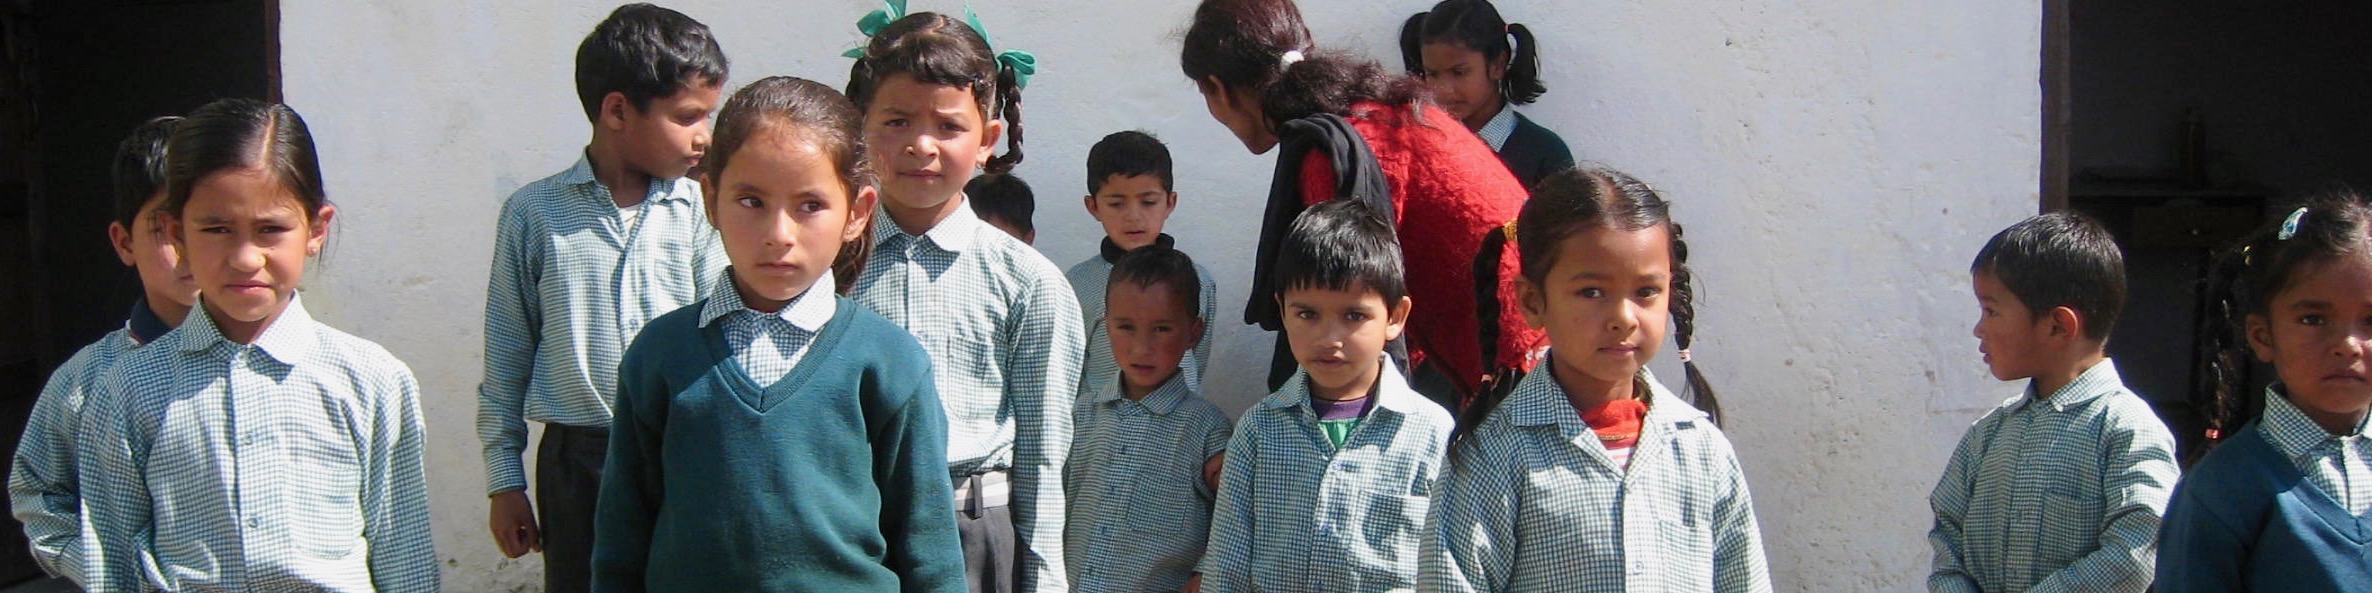 Himalayan Village School